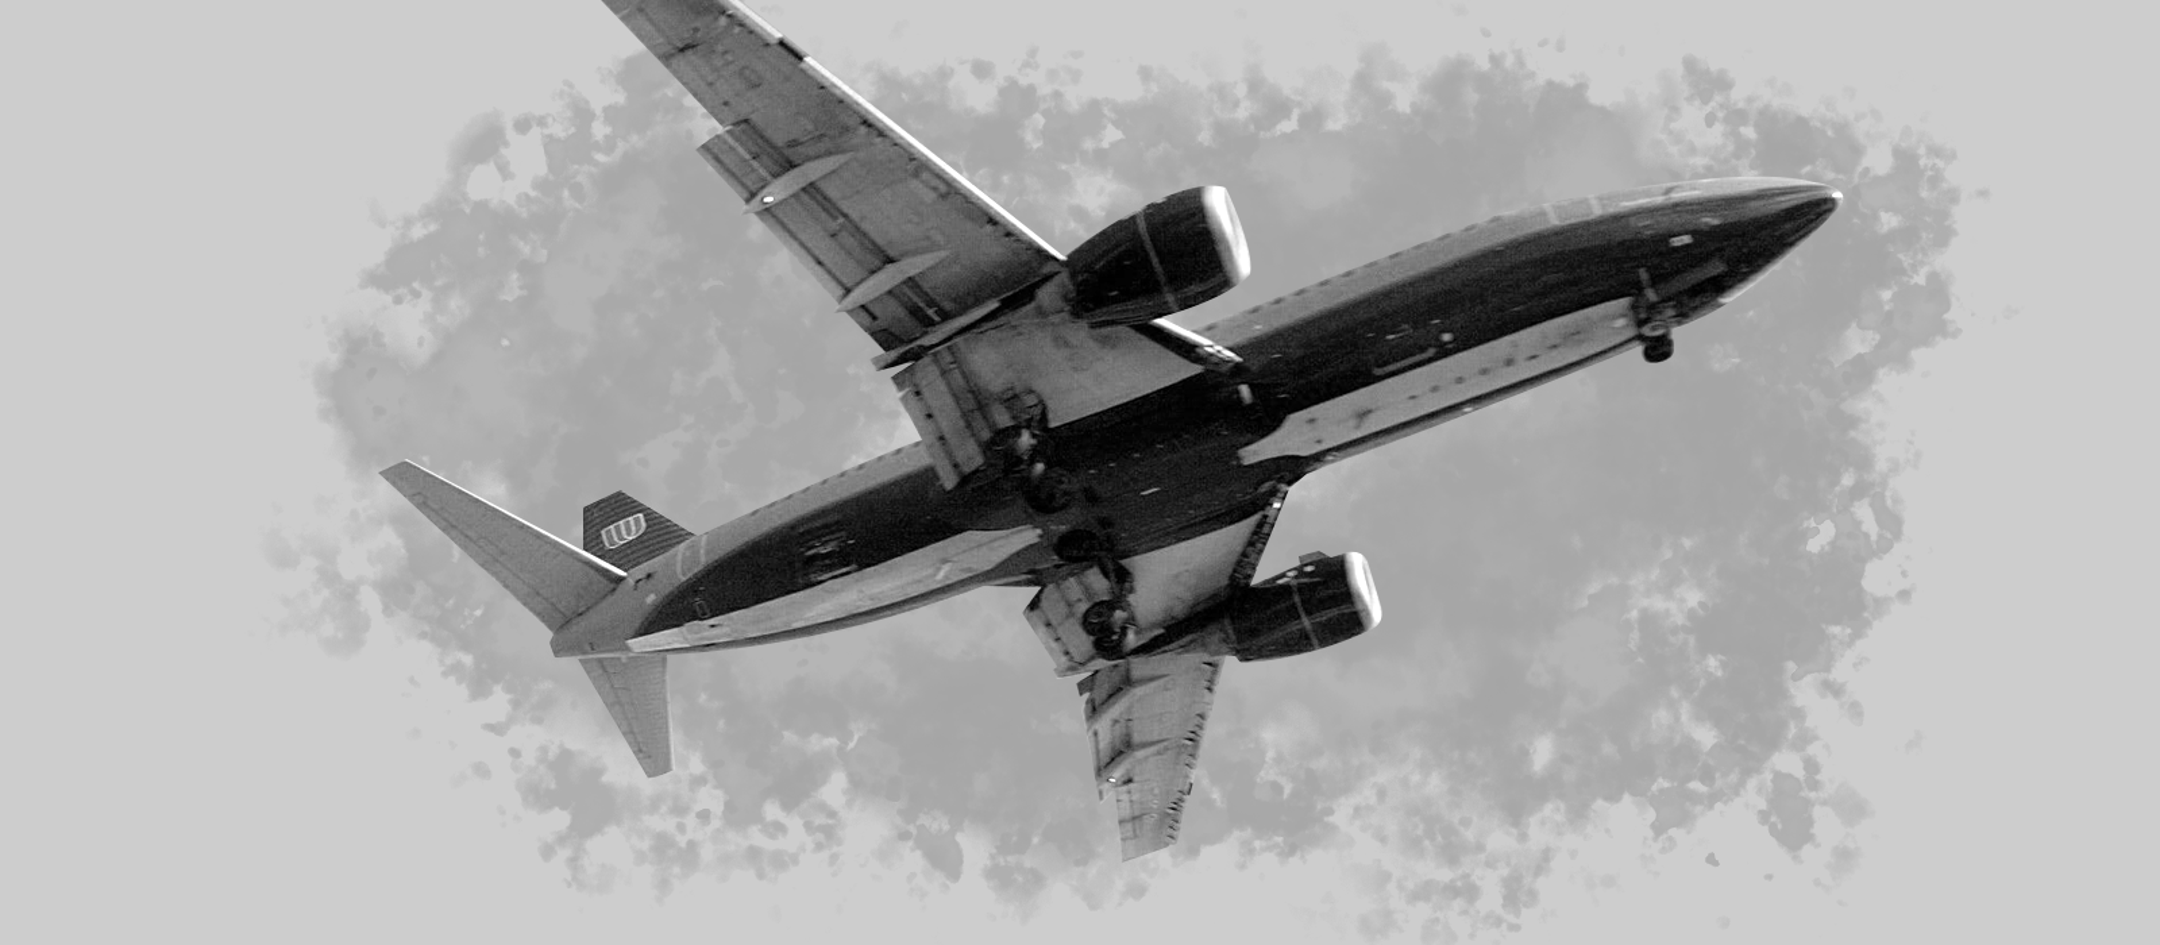 Gone West: Boeing Test Pilot James Gannett